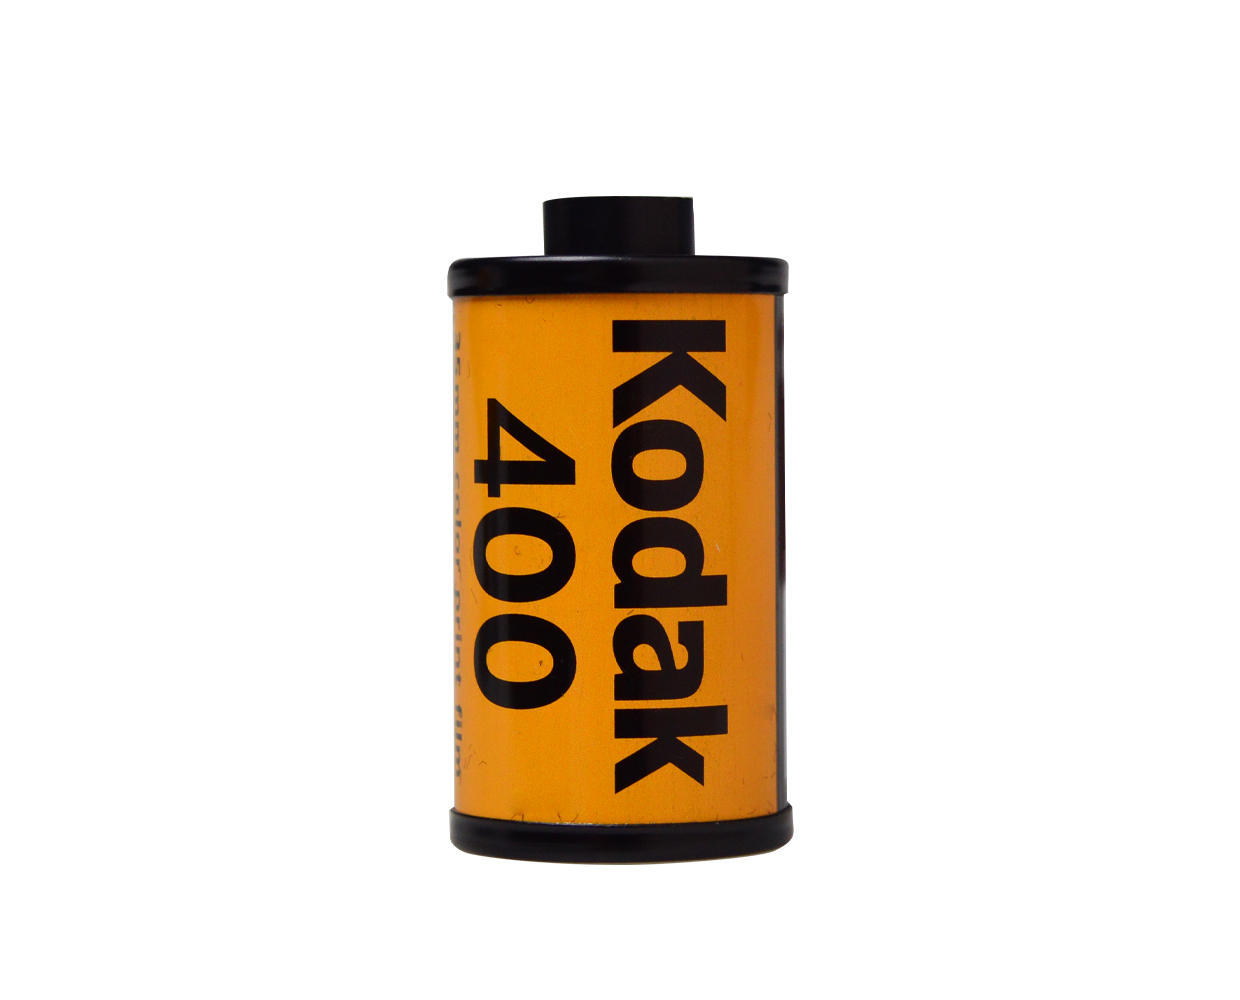 Kodak Ultra Max 400 35mm 36 Exposure